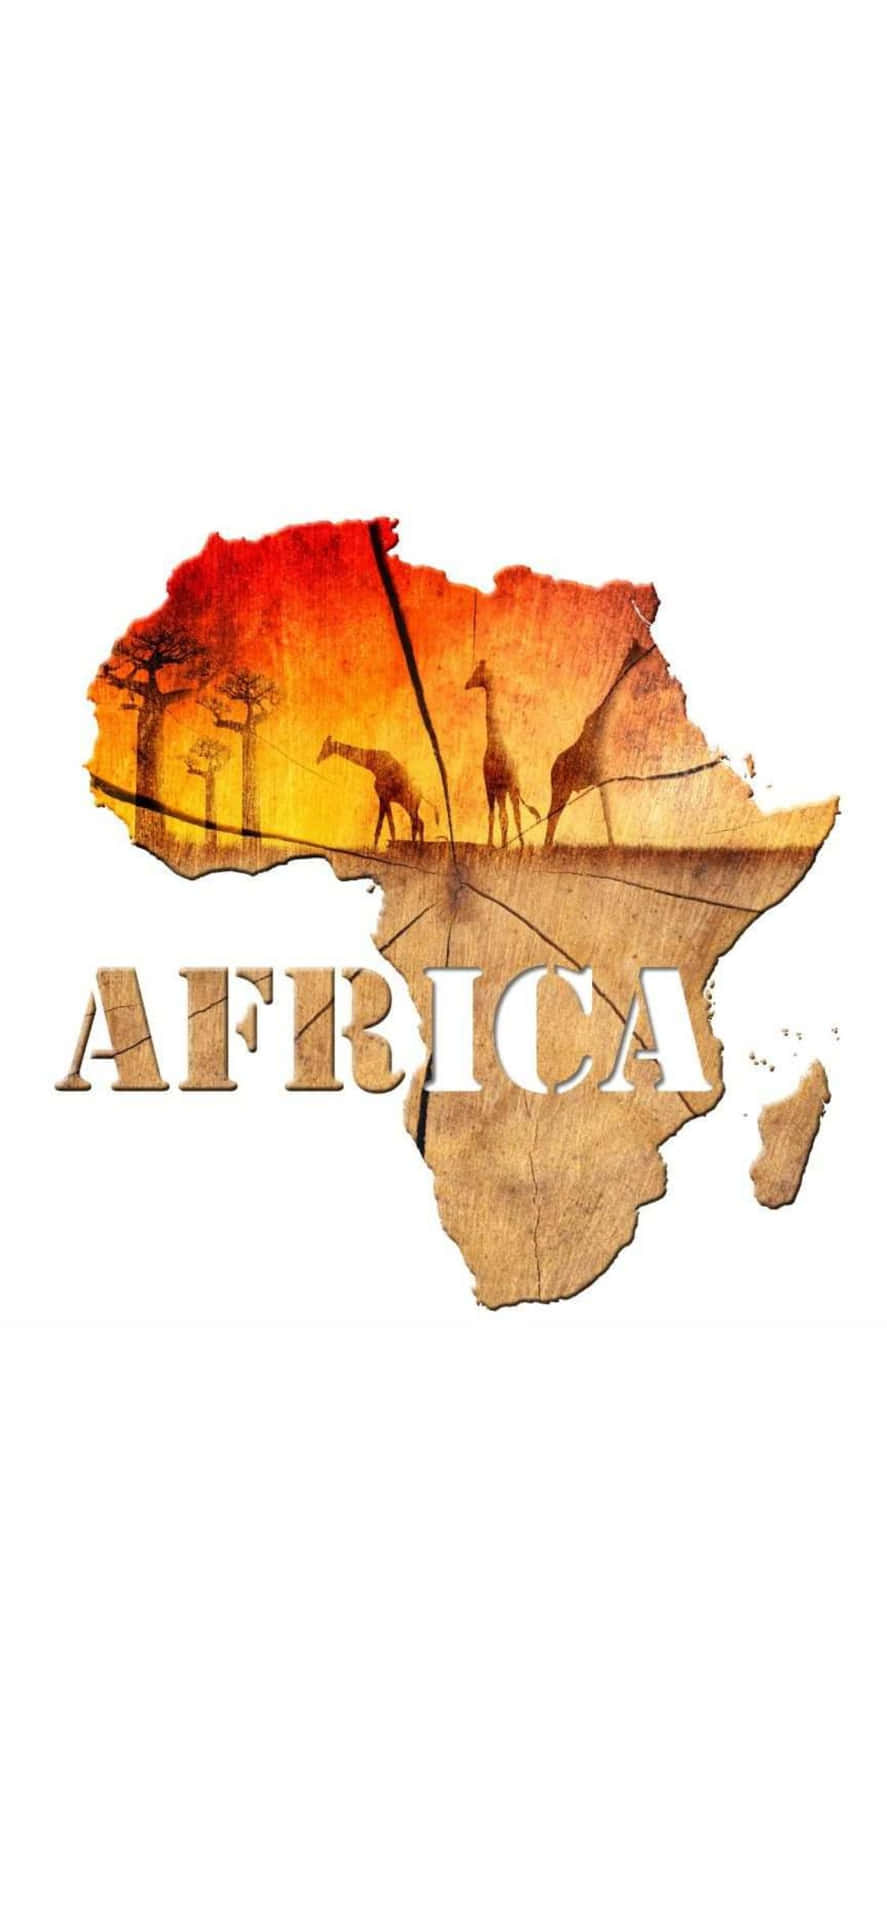 Afrikanskkarta Med Giraffer Och Zebror.